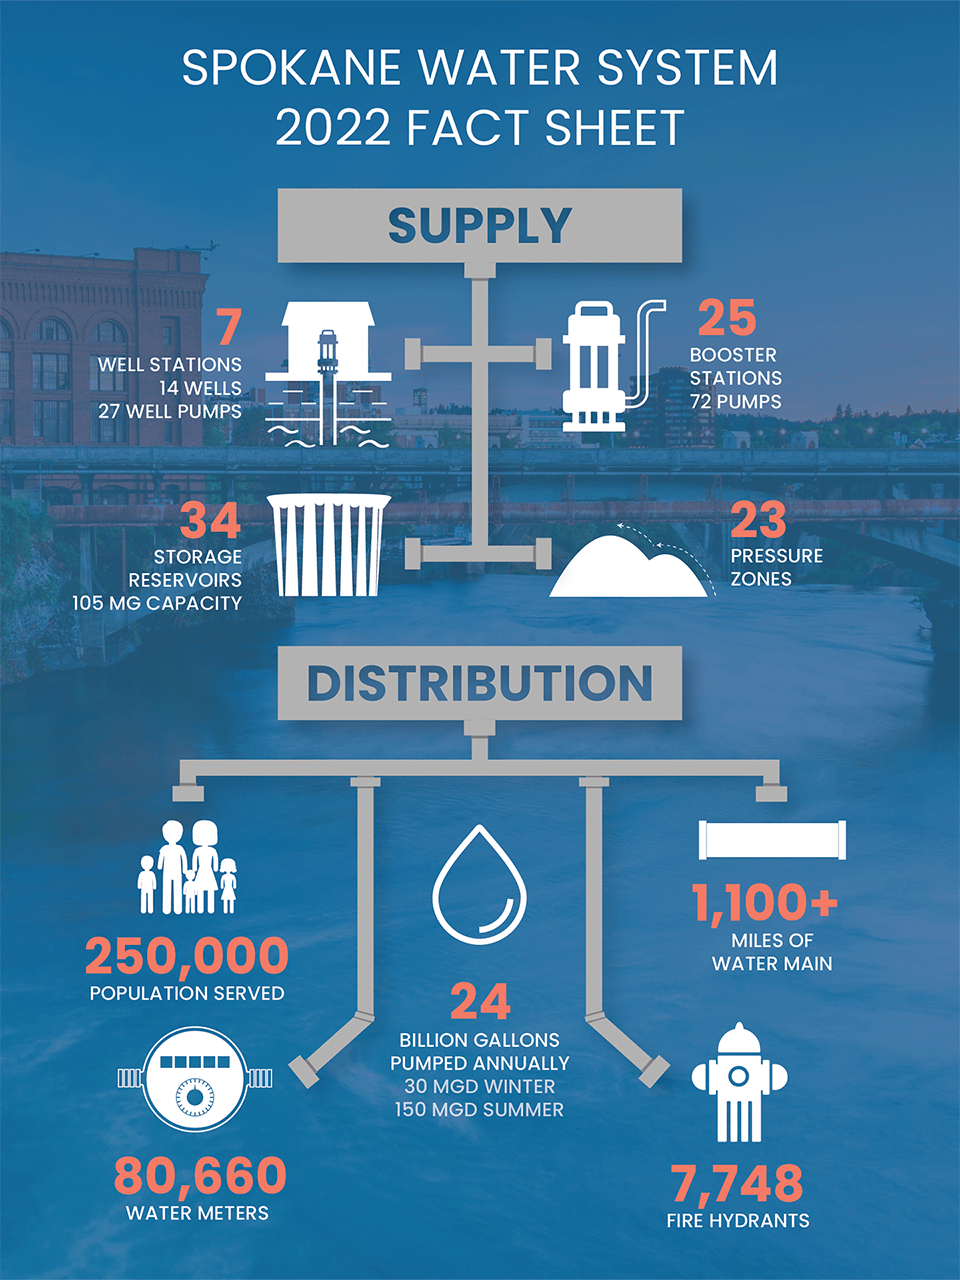 Spokane Water System Fact Sheet 2022